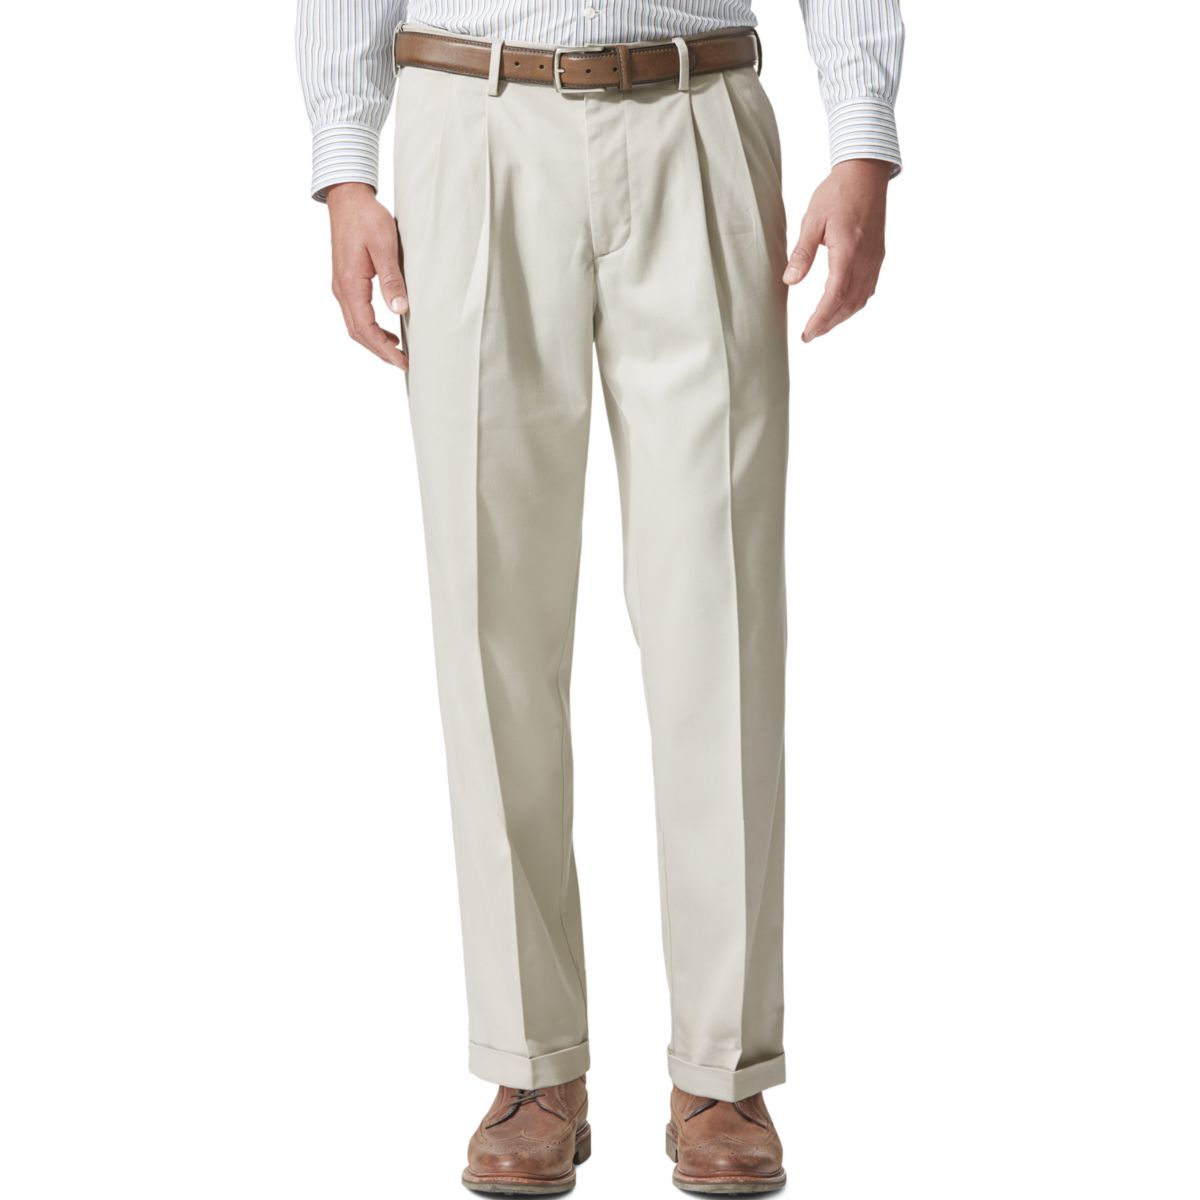 Комфортные эластичные брюки цвета хаки с манжетами и манжетами для мужчин Dockers® свободного кроя Dockers